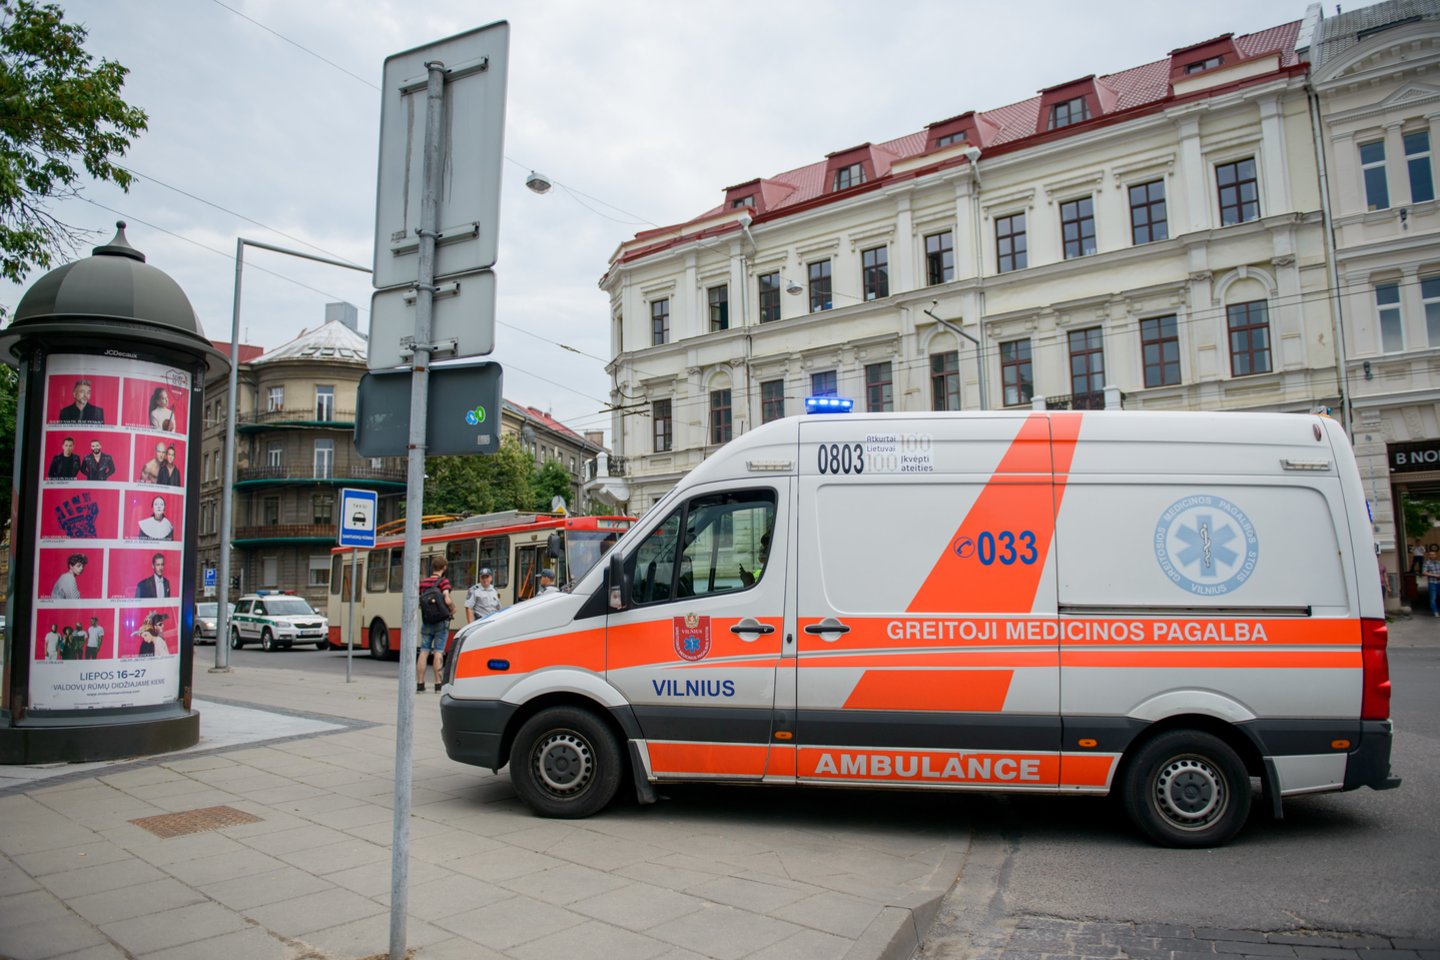  Smarkiai sumuštas vaikas nugabentas į ligoninę. <br> J.Stacevičiaus asociatyvi nuotr. 